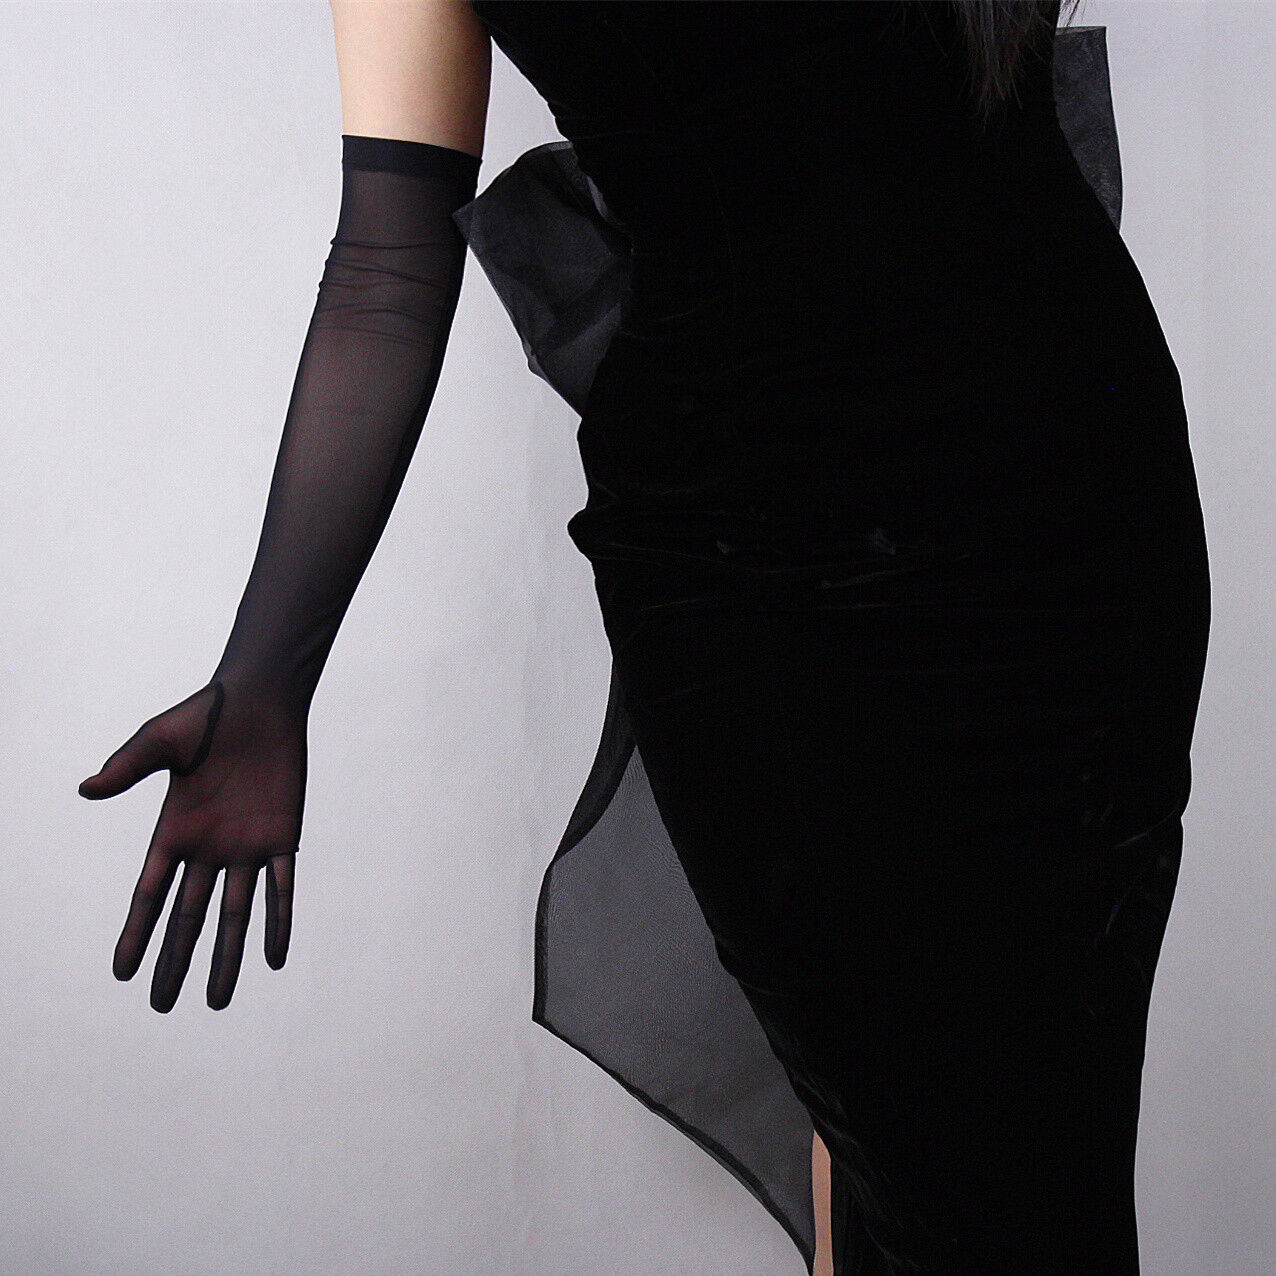 Long Sheer Black Gloves